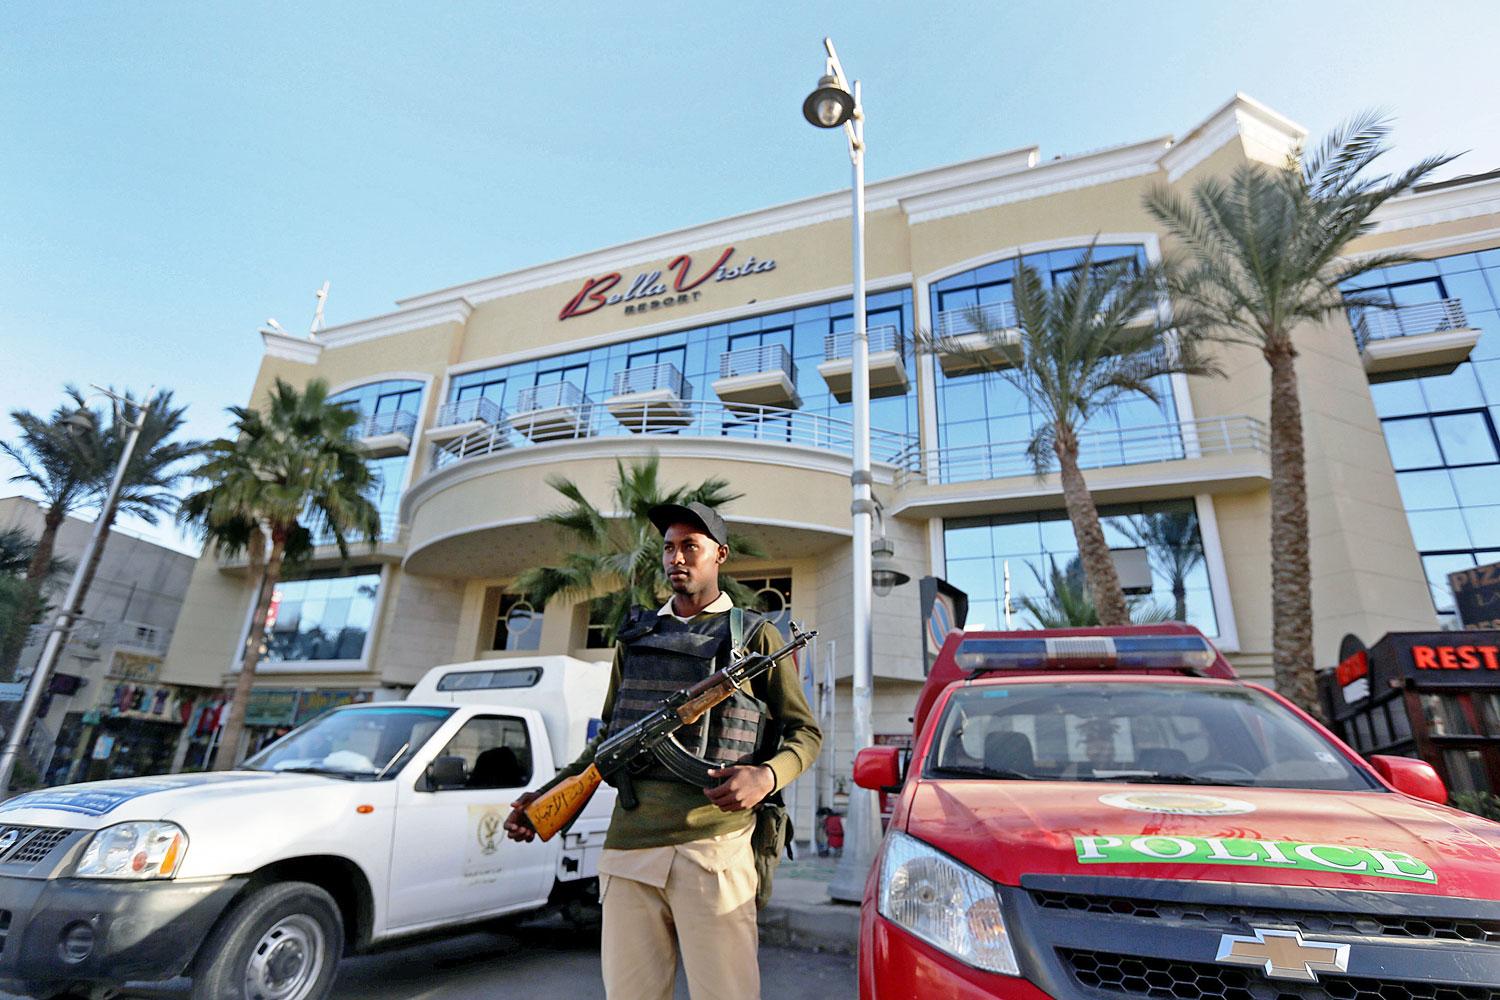 Hurghadán a terrorhírbe keveredett szálloda előtt ma is fegyveres posztol